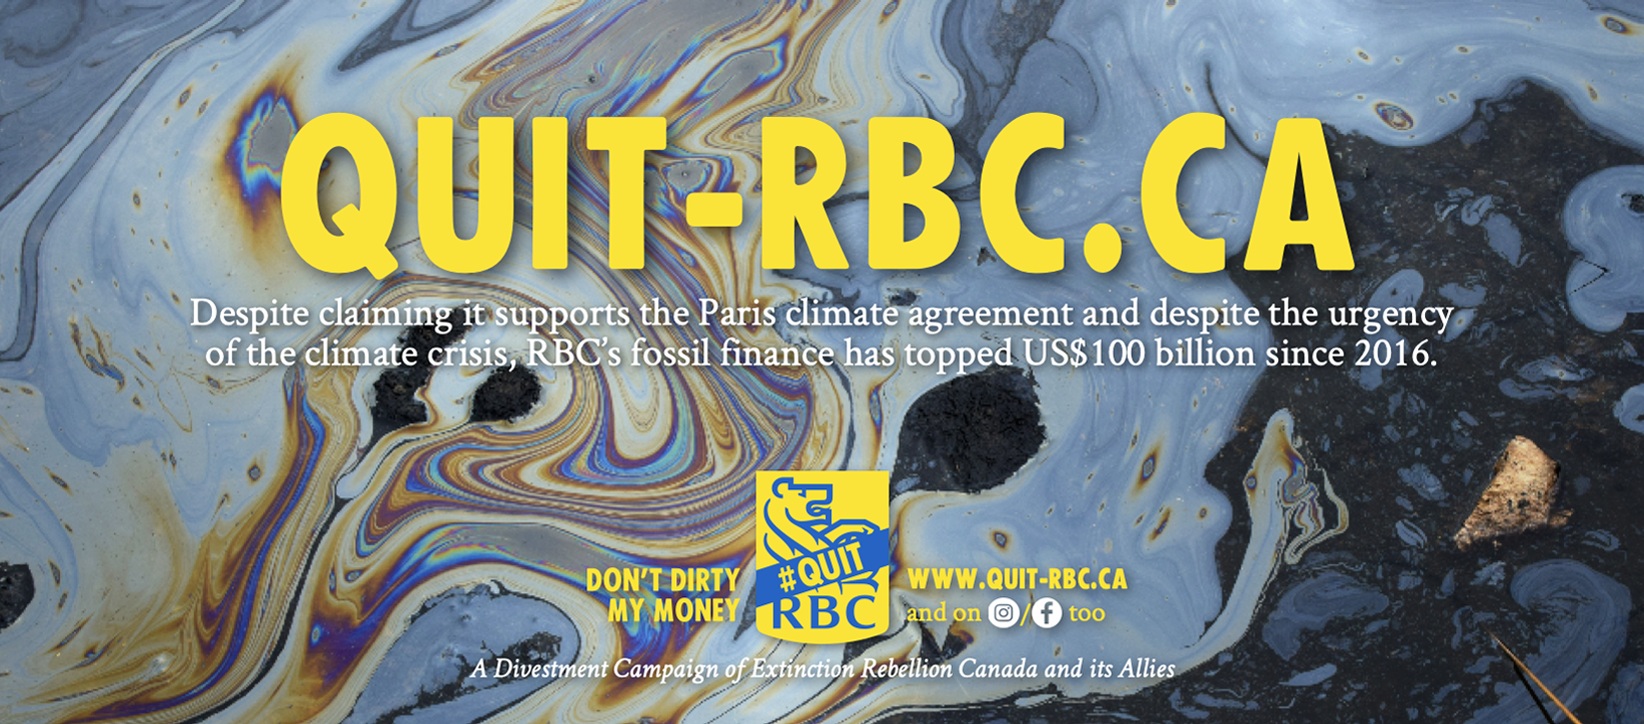 www.quit-rbc.ca